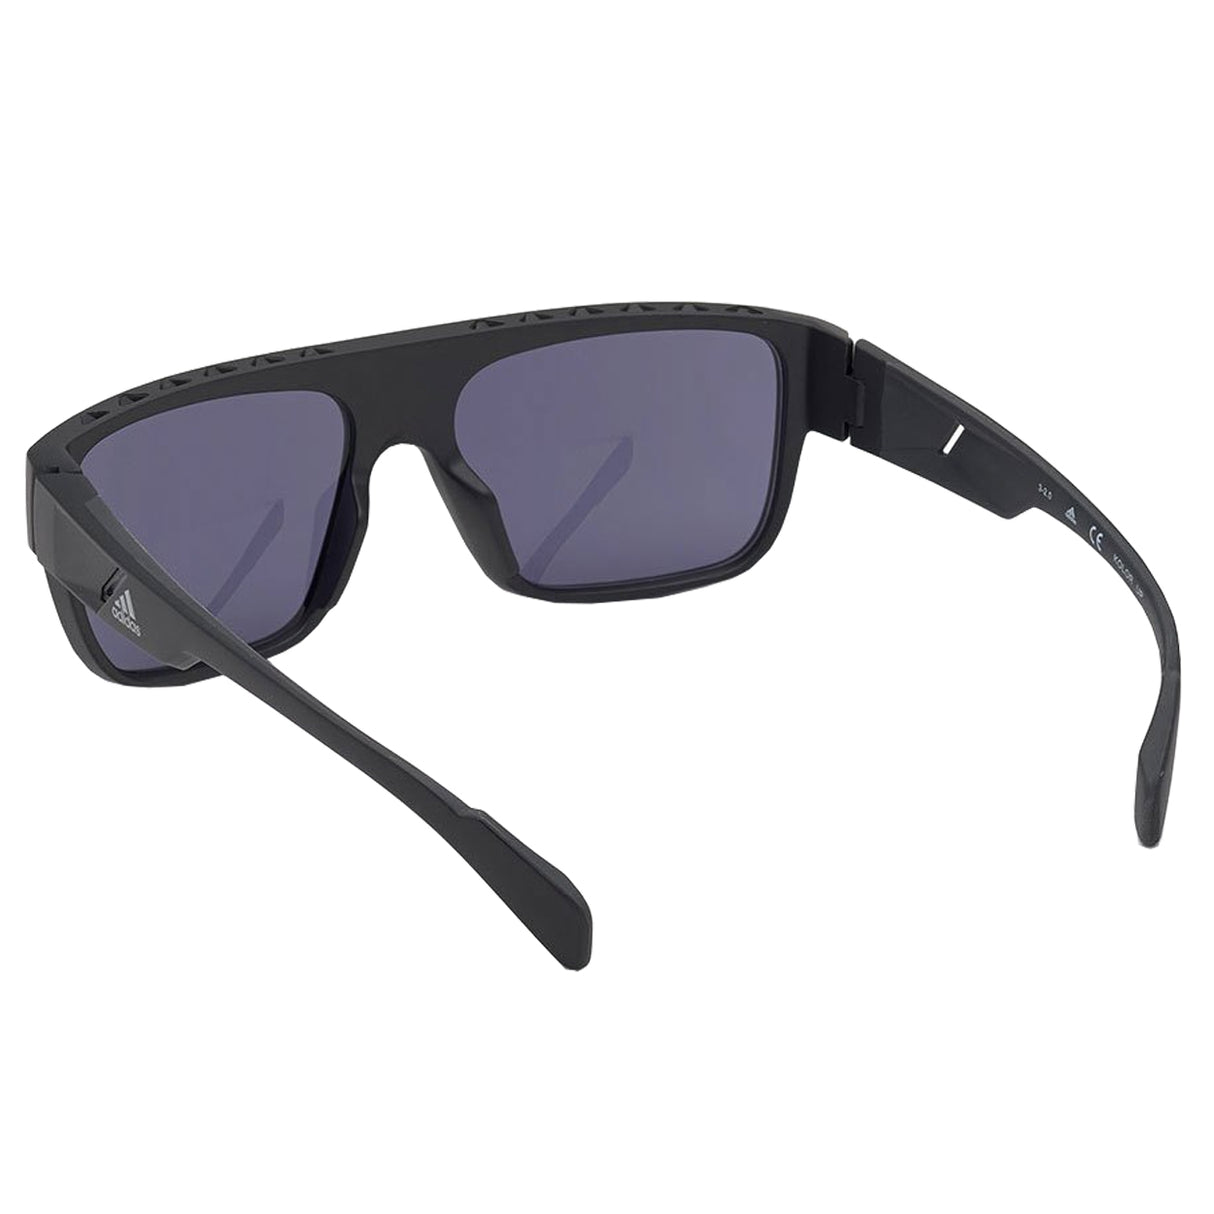 Adidas Golf Men's SP0037 Full Rim Sport Sunglasses